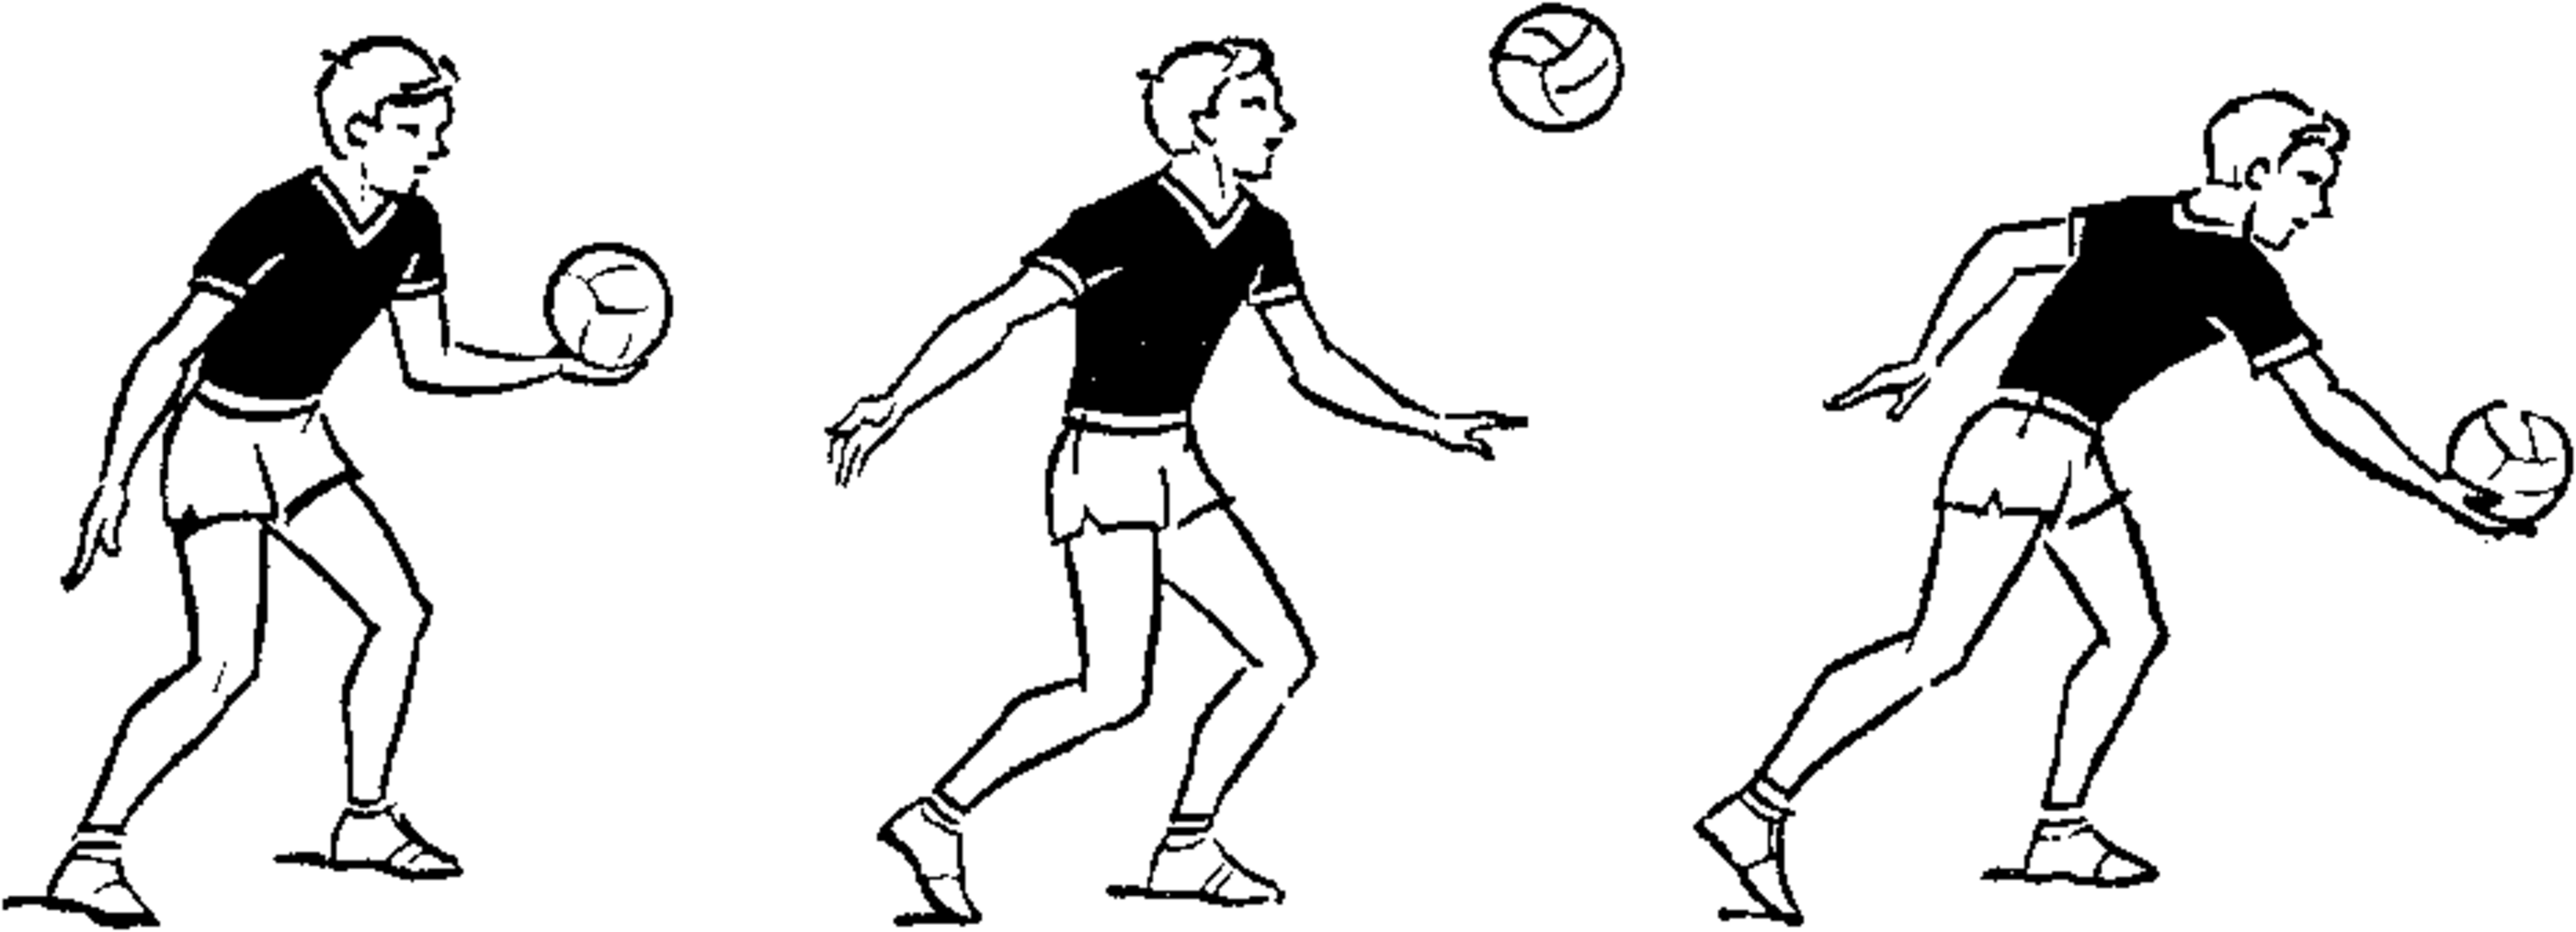 Подачи в волейболе: верхняя, нижняя, силовая, техника подач в волейболе